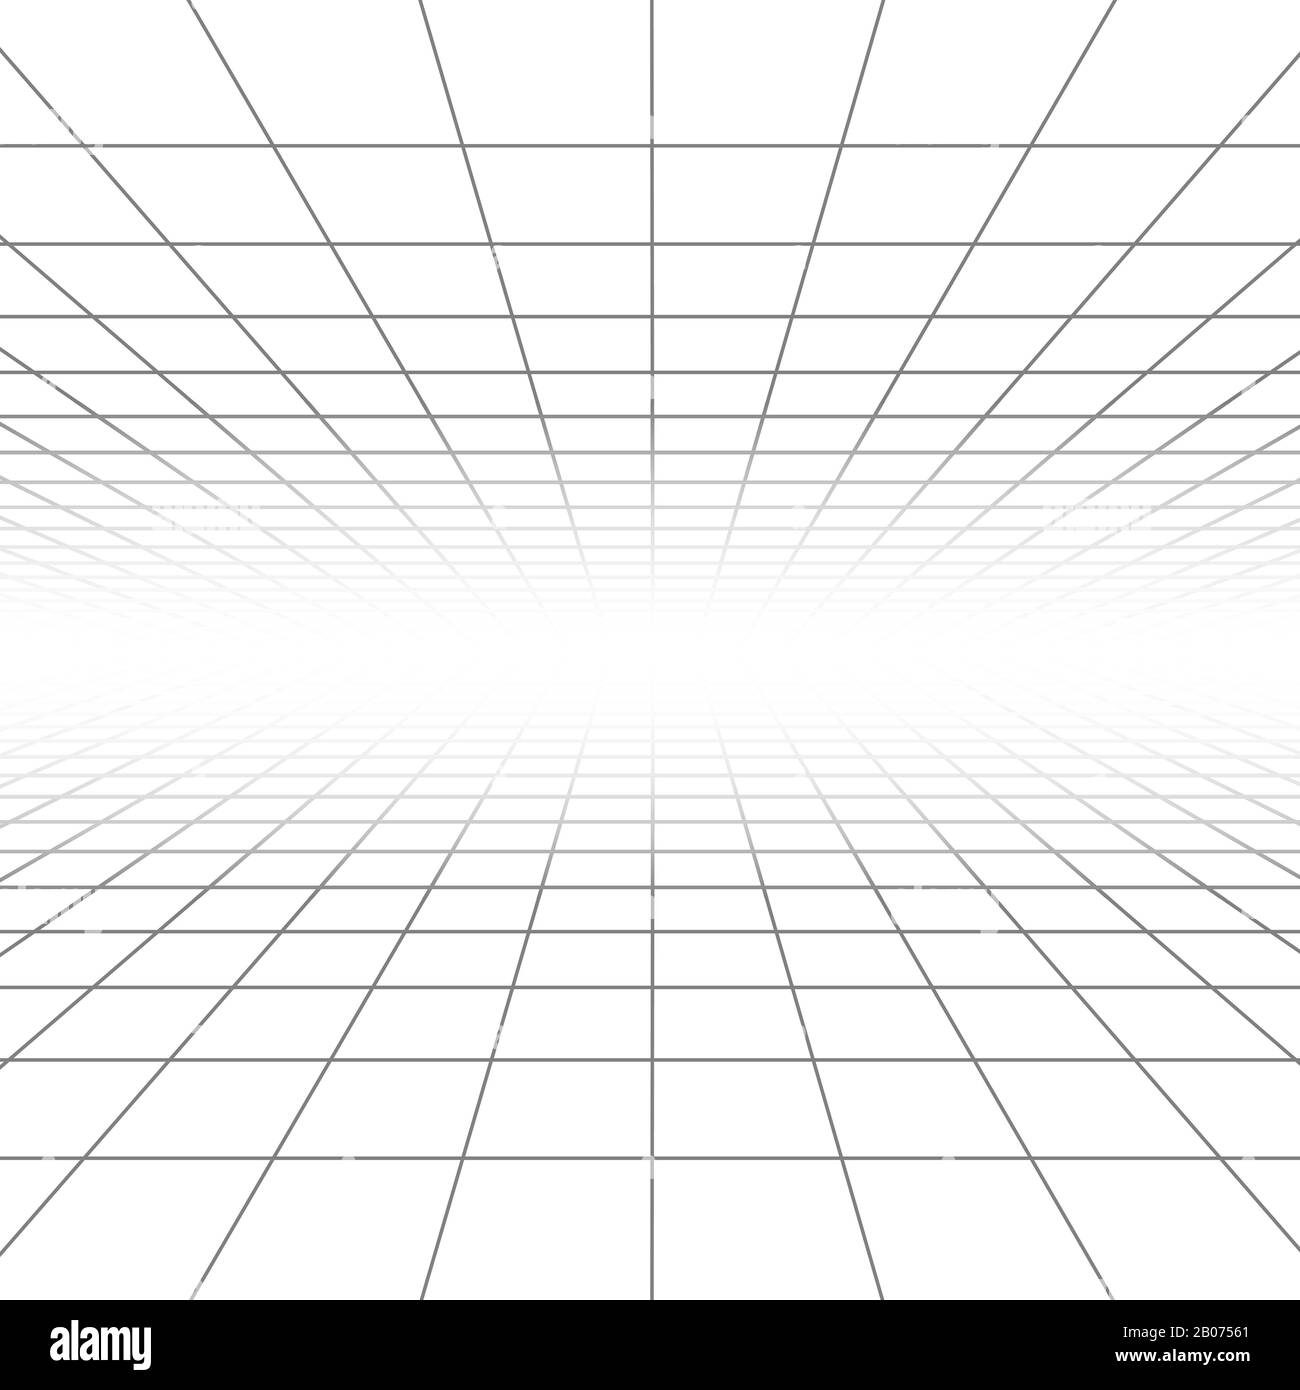 Linee vettoriali per griglia in prospettiva a soffitto e a pavimento, struttura a reticolo. Illustrazione con piastrelle a scacchi Infinity Illustrazione Vettoriale